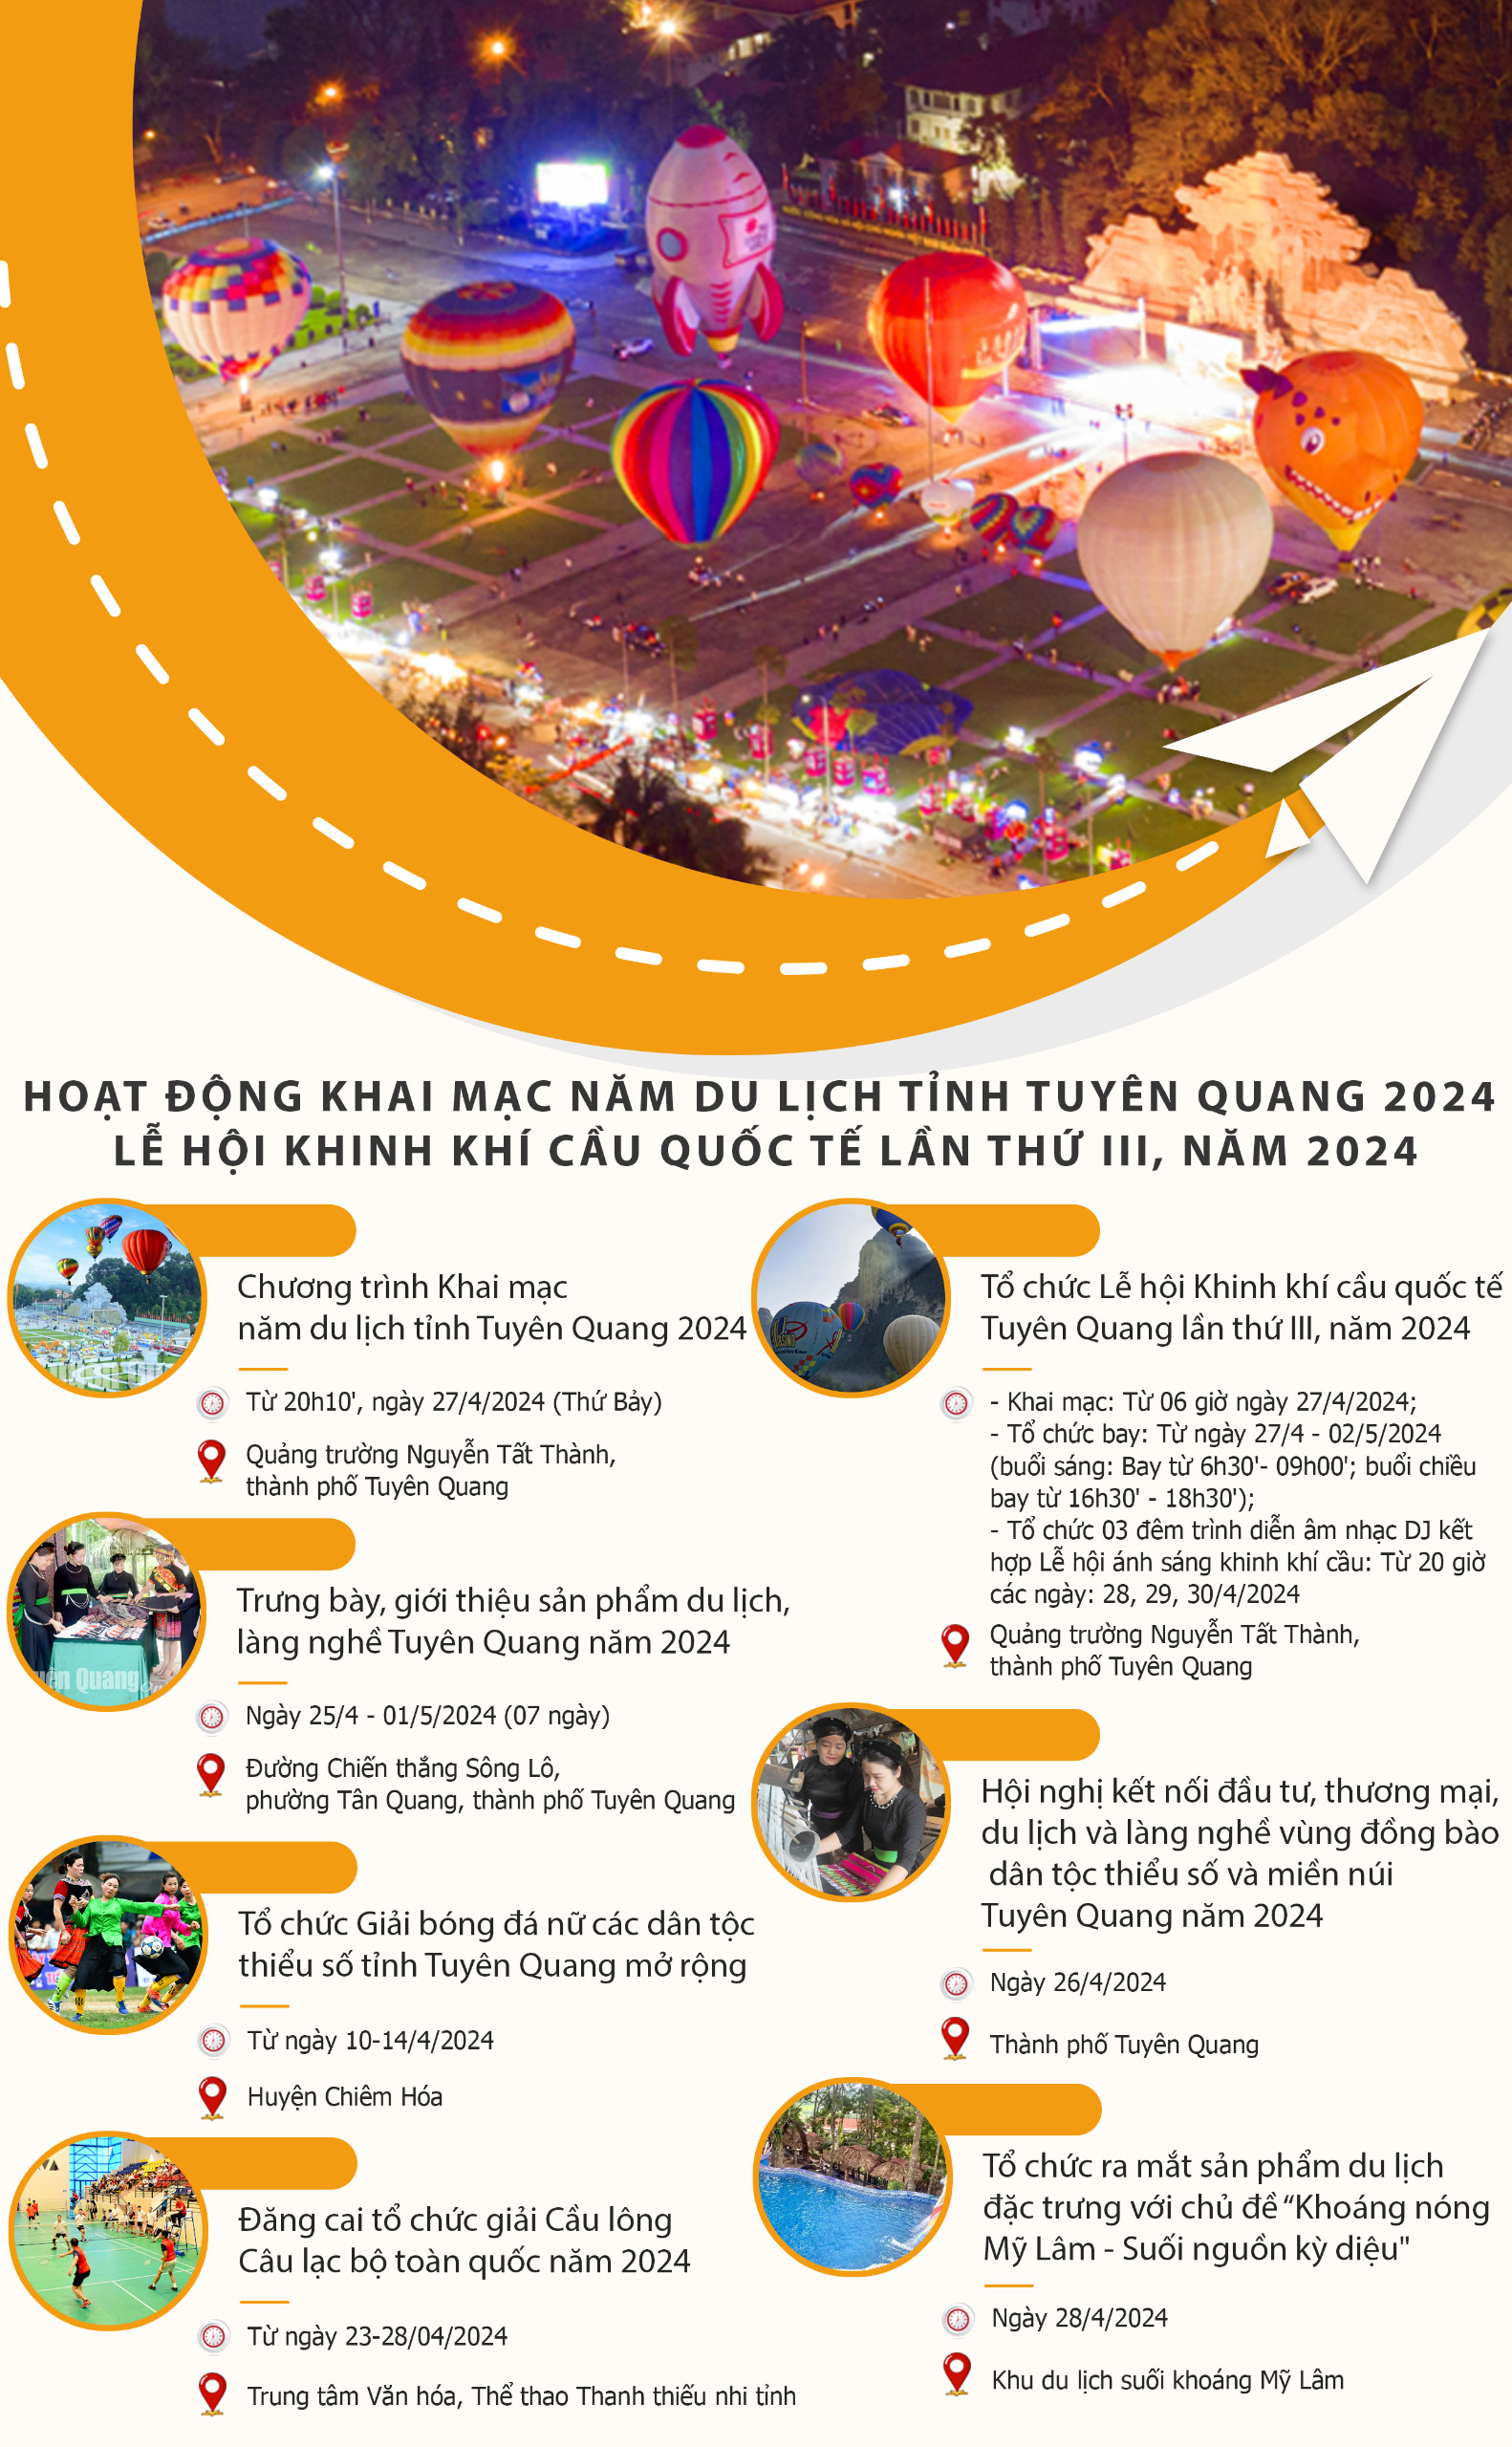 Lịch tổ chức các hoạt động Khai mạc Năm du lịch tỉnh Tuyên Quang 2024 và Lễ hội khinh khí cầu quốc tế lần thứ III, năm 2024